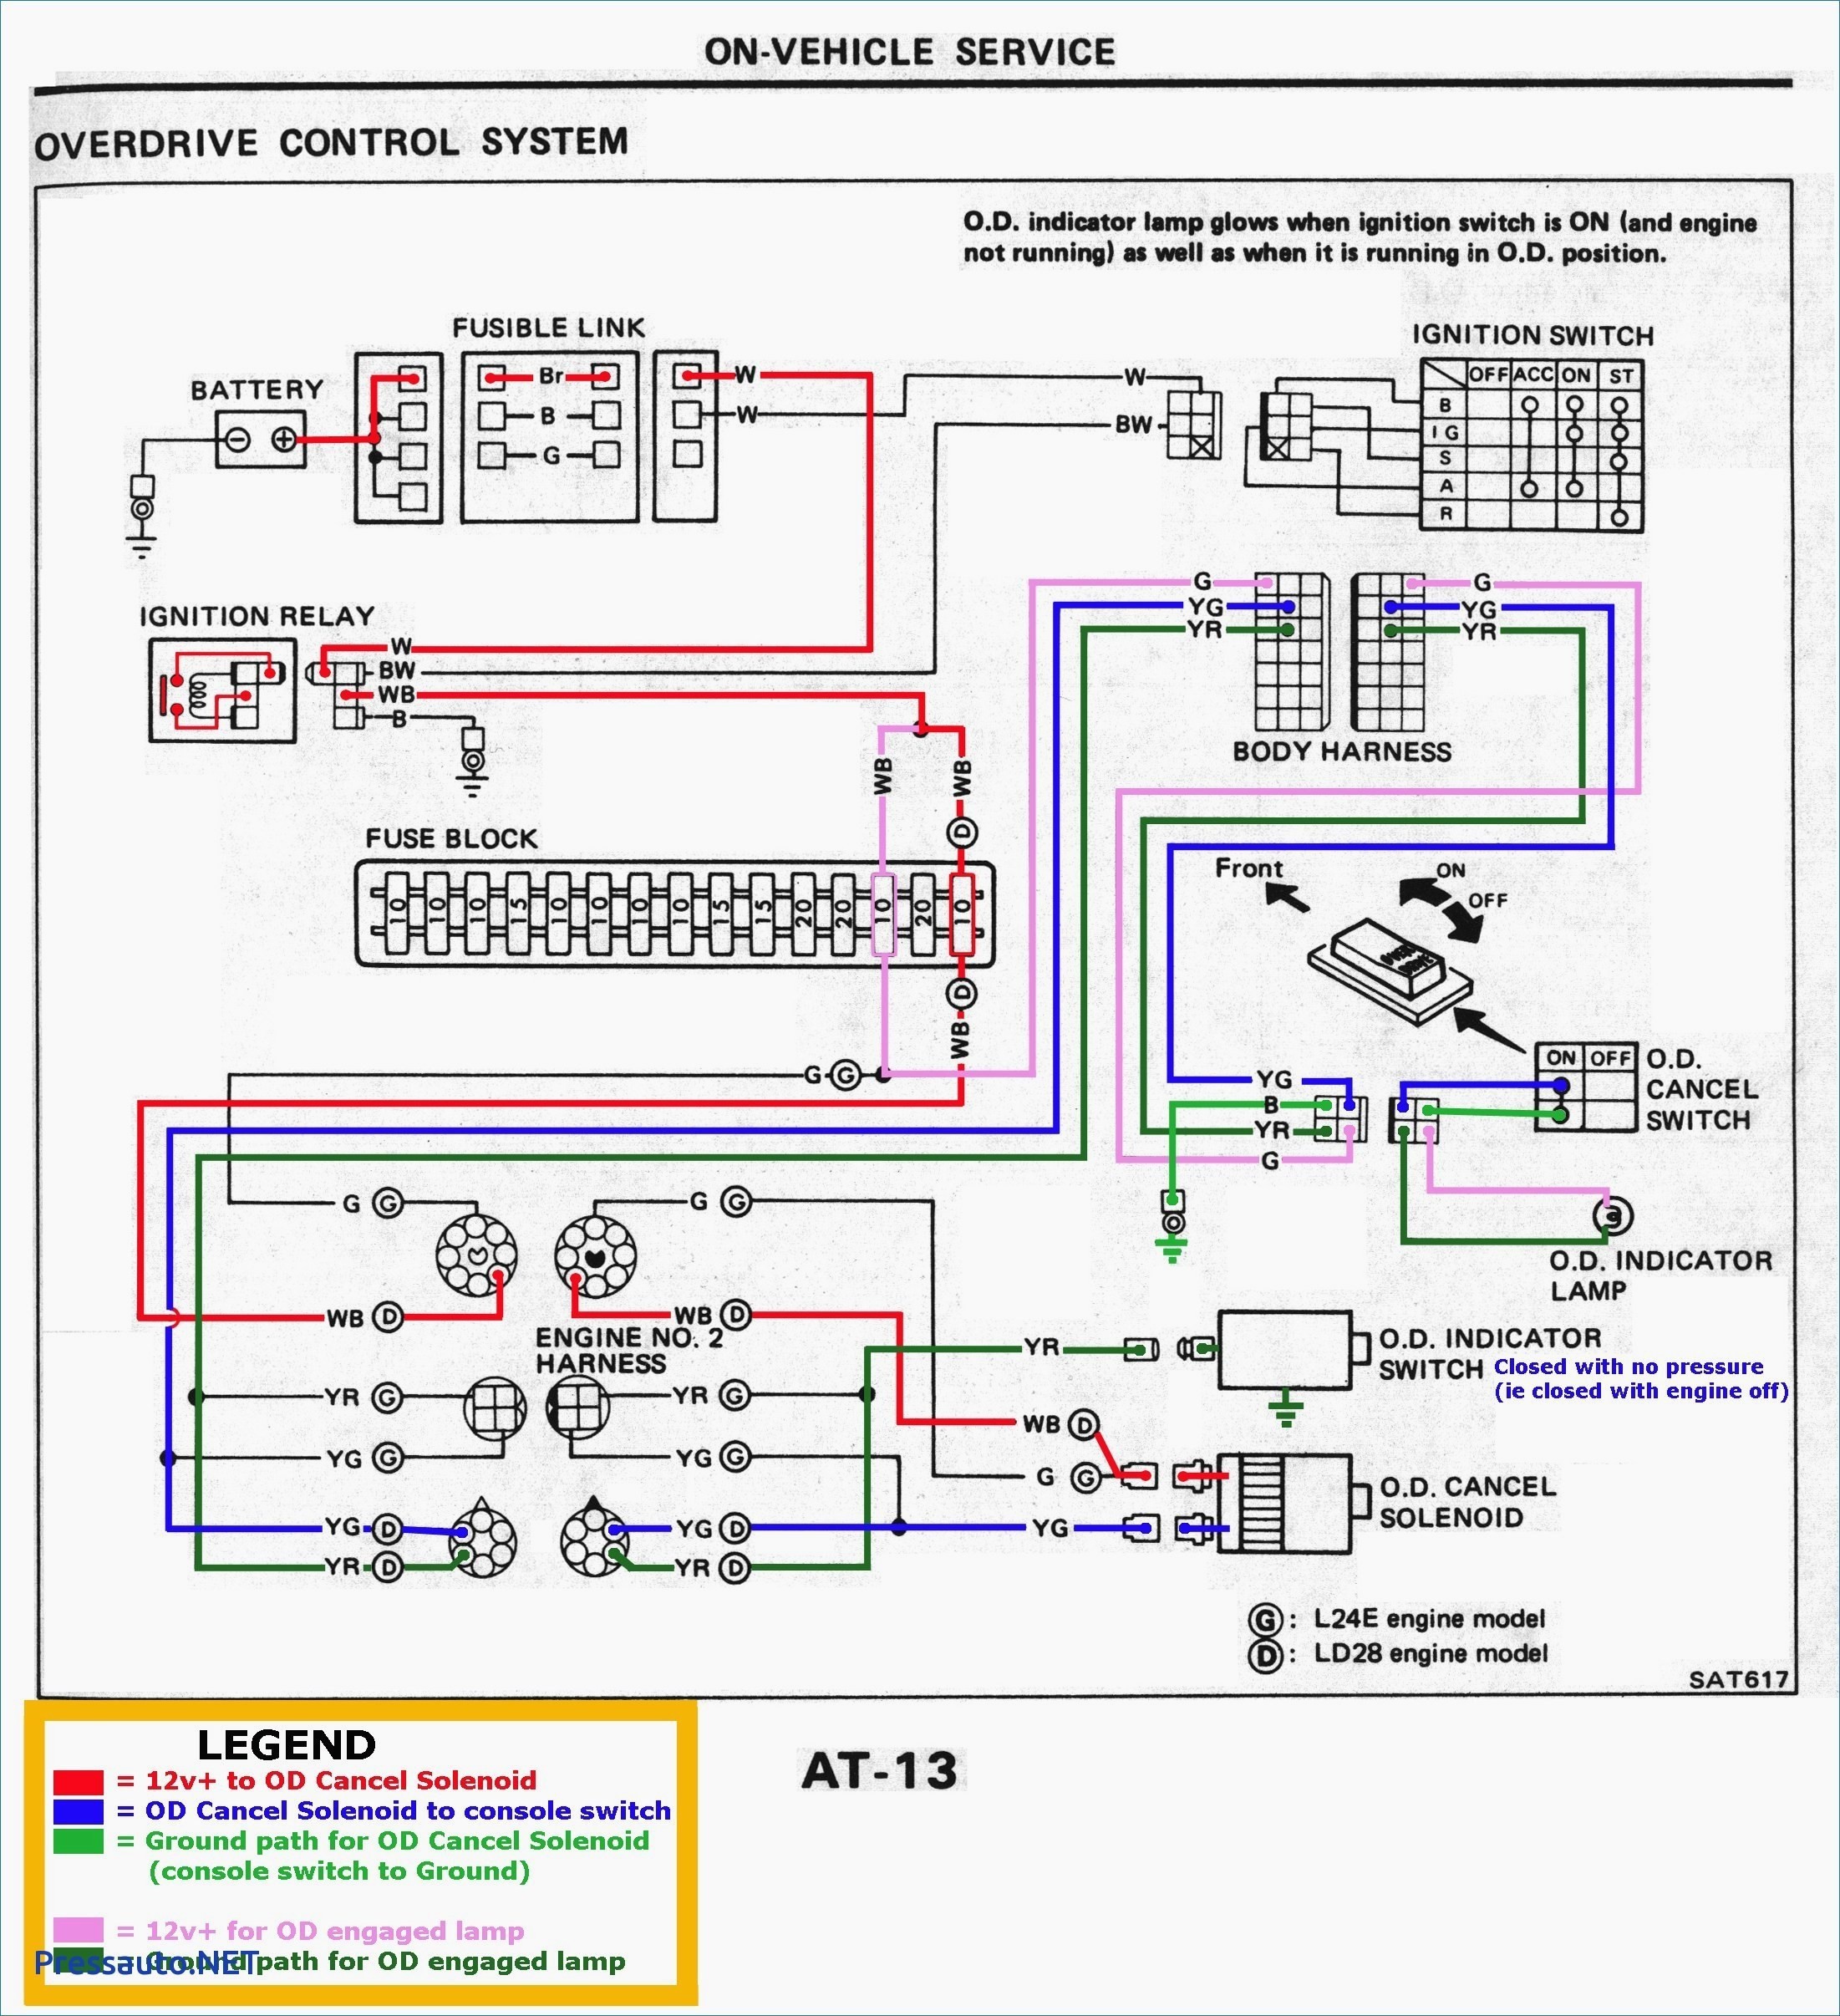 Scosche Wire Diagram 2005 Chrysler Wiring Diagram User Diagram Harness T Wiring Scosche Btta02b